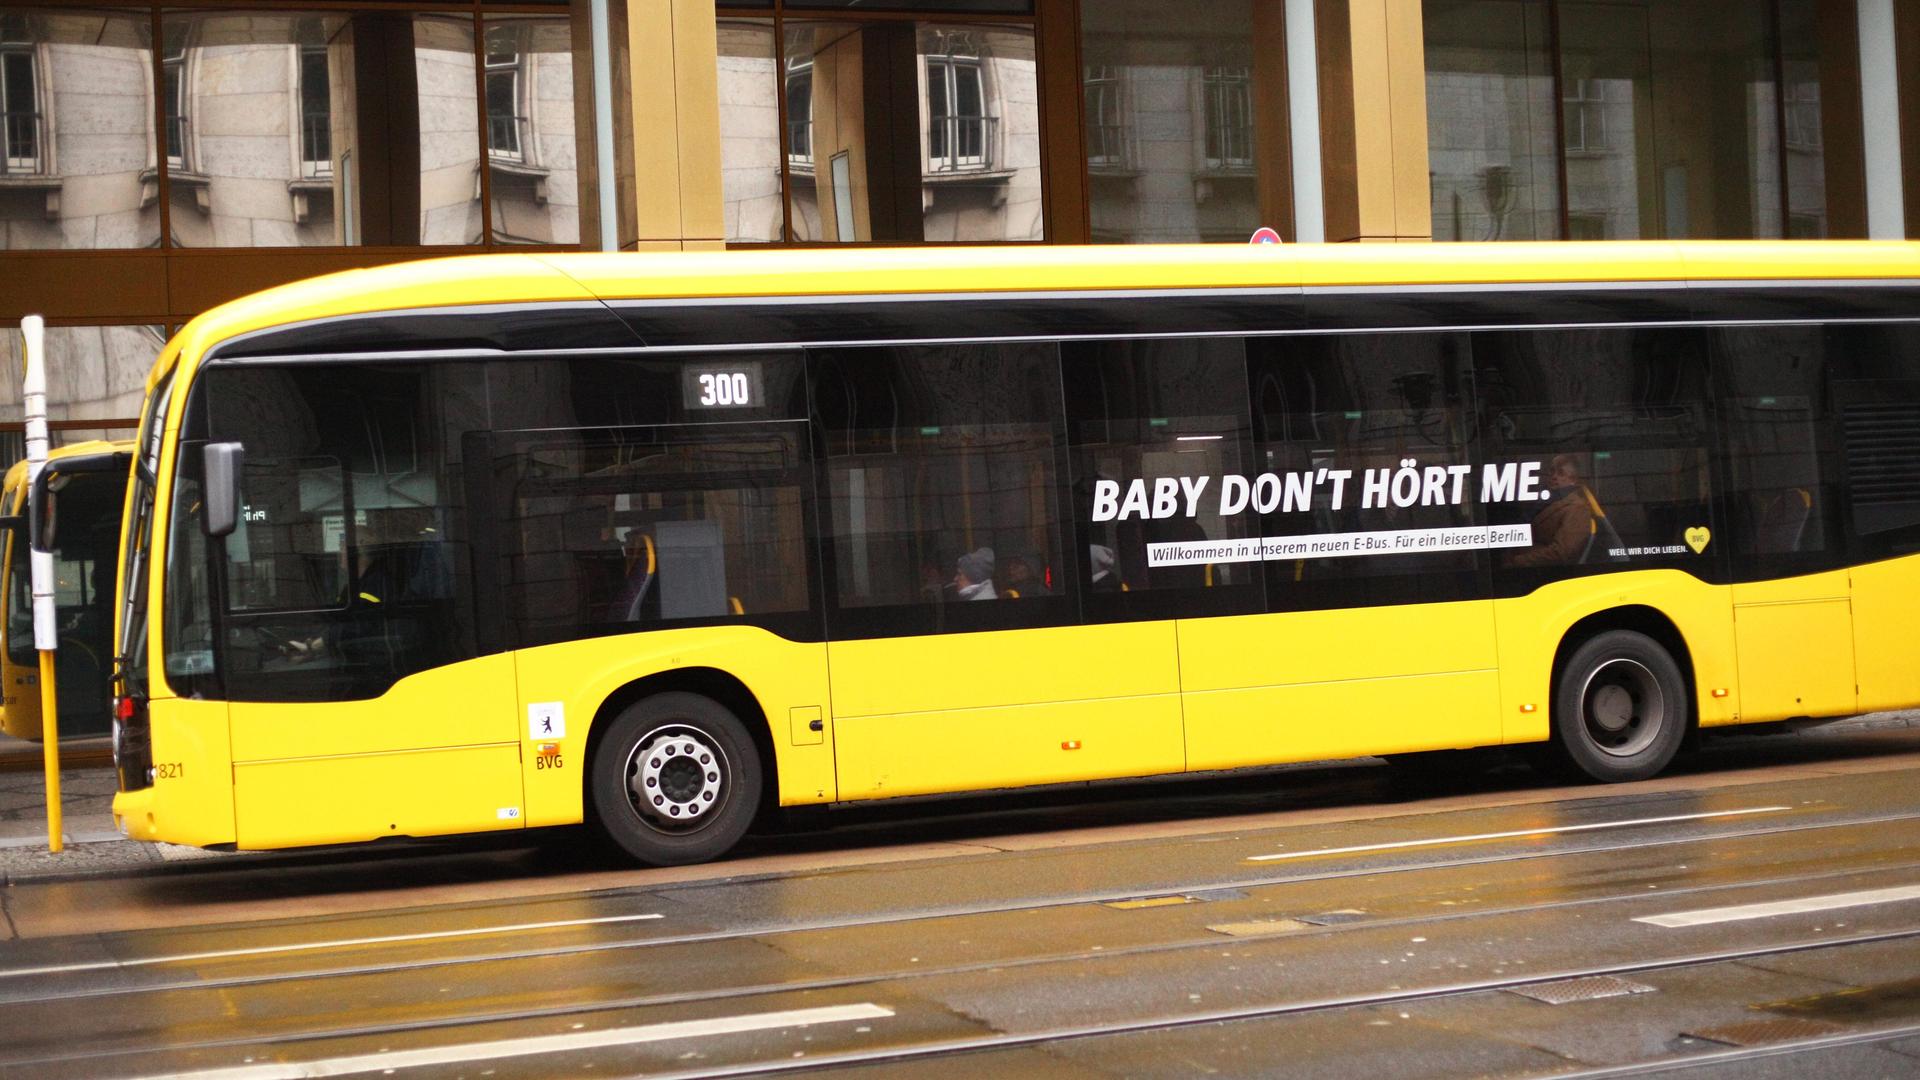 Auf einem gelben Bus in Berlin steht "Baby don't hört me" als Werbung für das leisere Elektro-Fahrzeug.